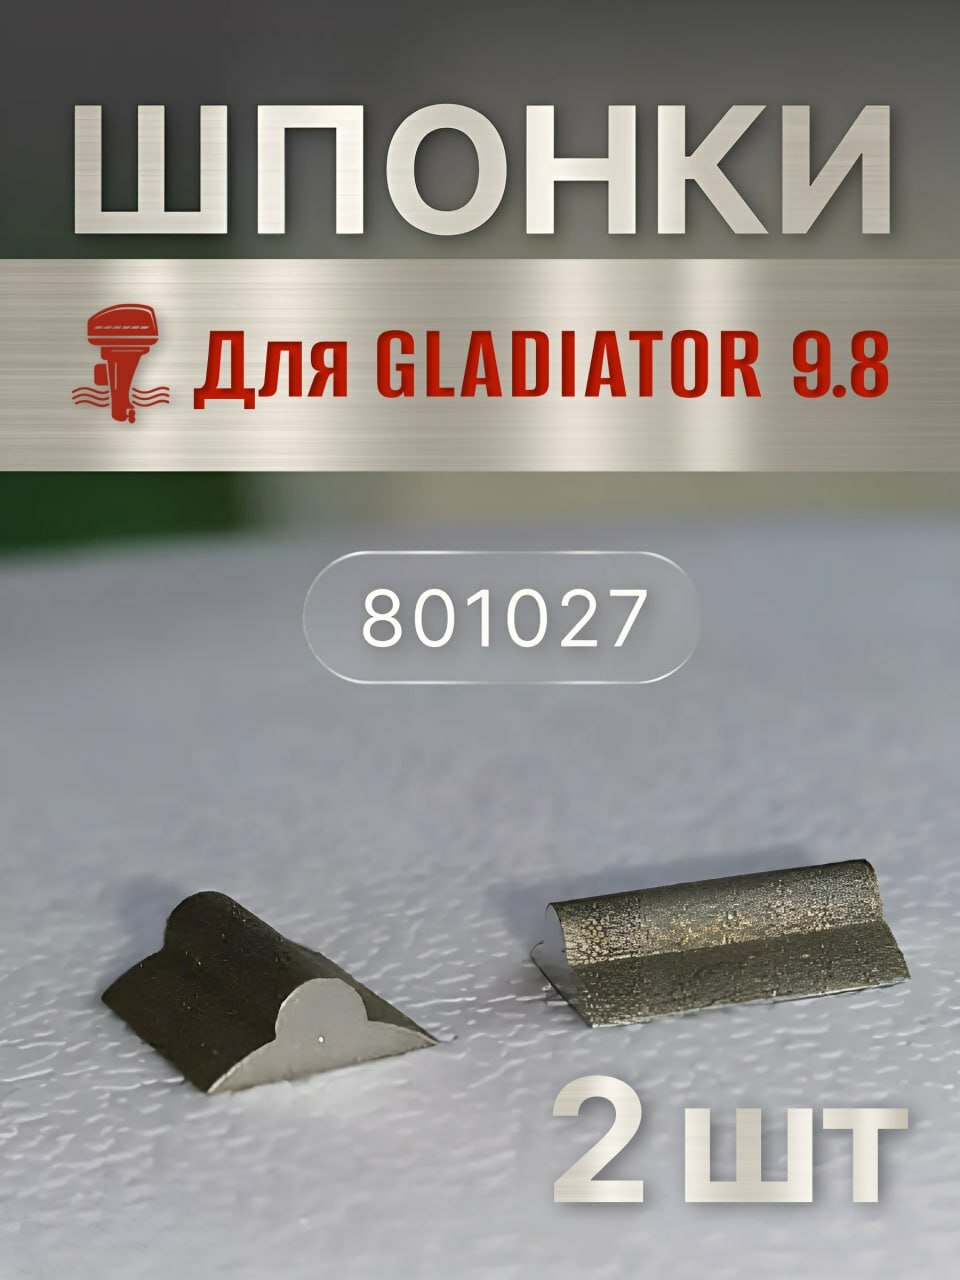 Шпонка крыльчатки охлаждения для Gladiator 8-9.8 , комплект 2 шт